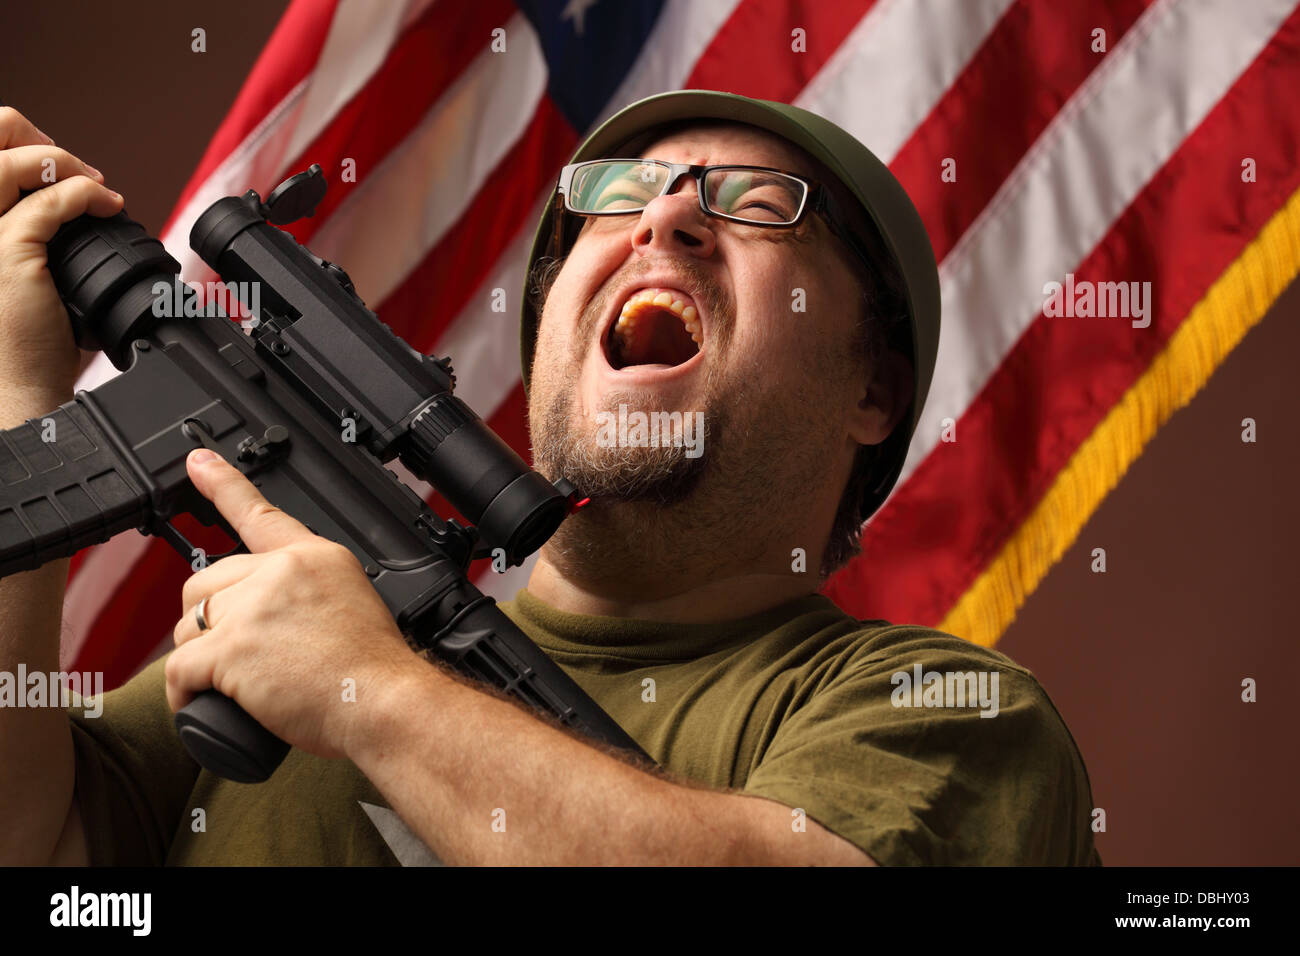 aggressive GI im T-shirt hält Angriff Gewehr mit Zielfernrohr und Schreie Mund öffnen vor Sternenbanner Stockfoto